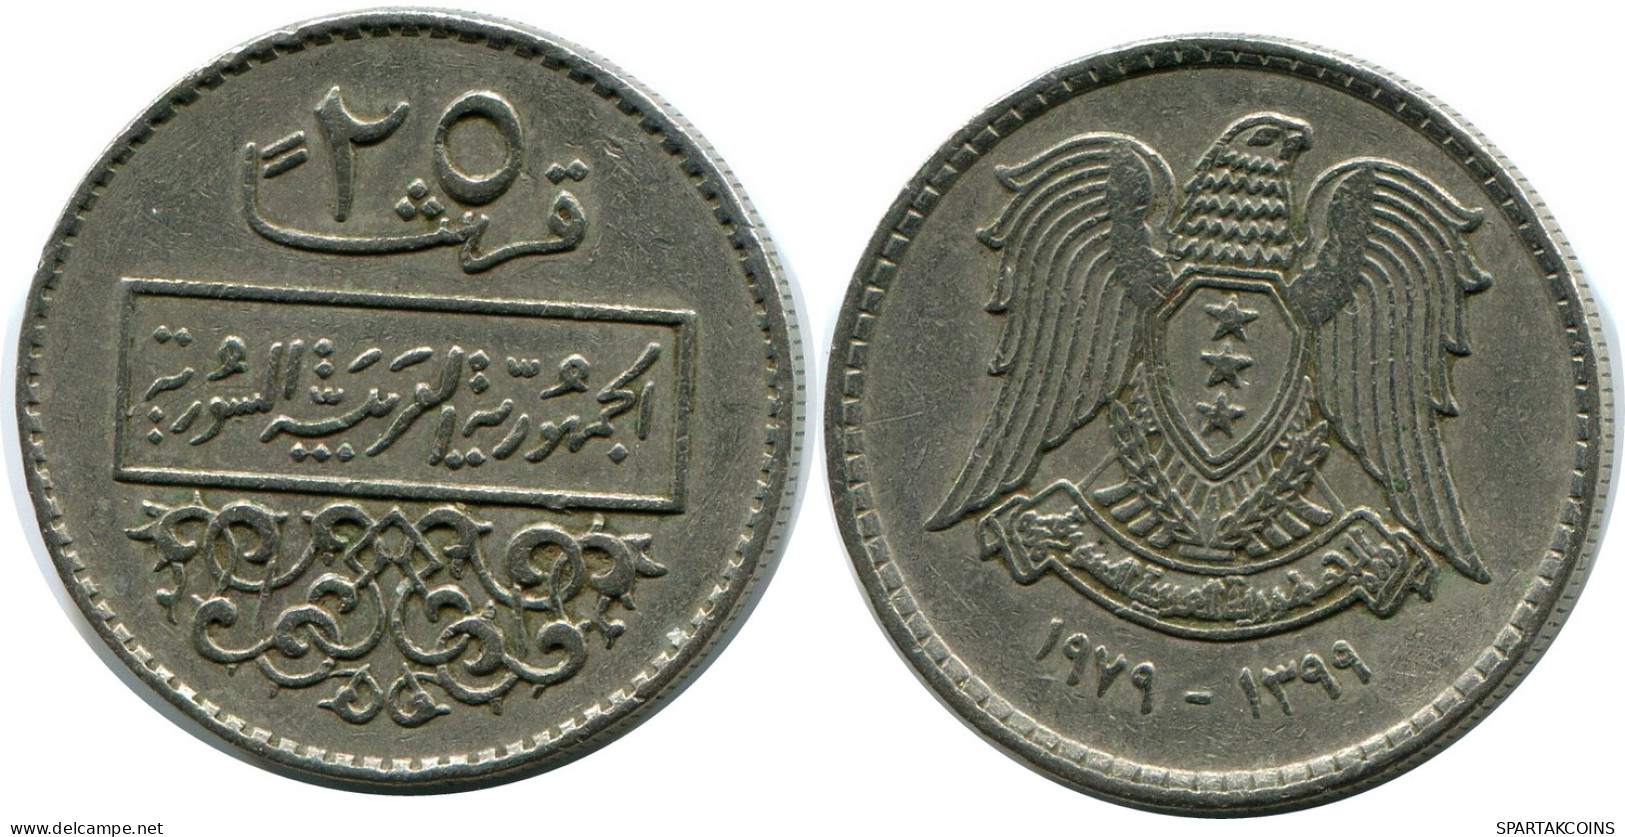 25 QIRSH 1979 SYRIA Islamic Coin #AZ333.U - Syrie